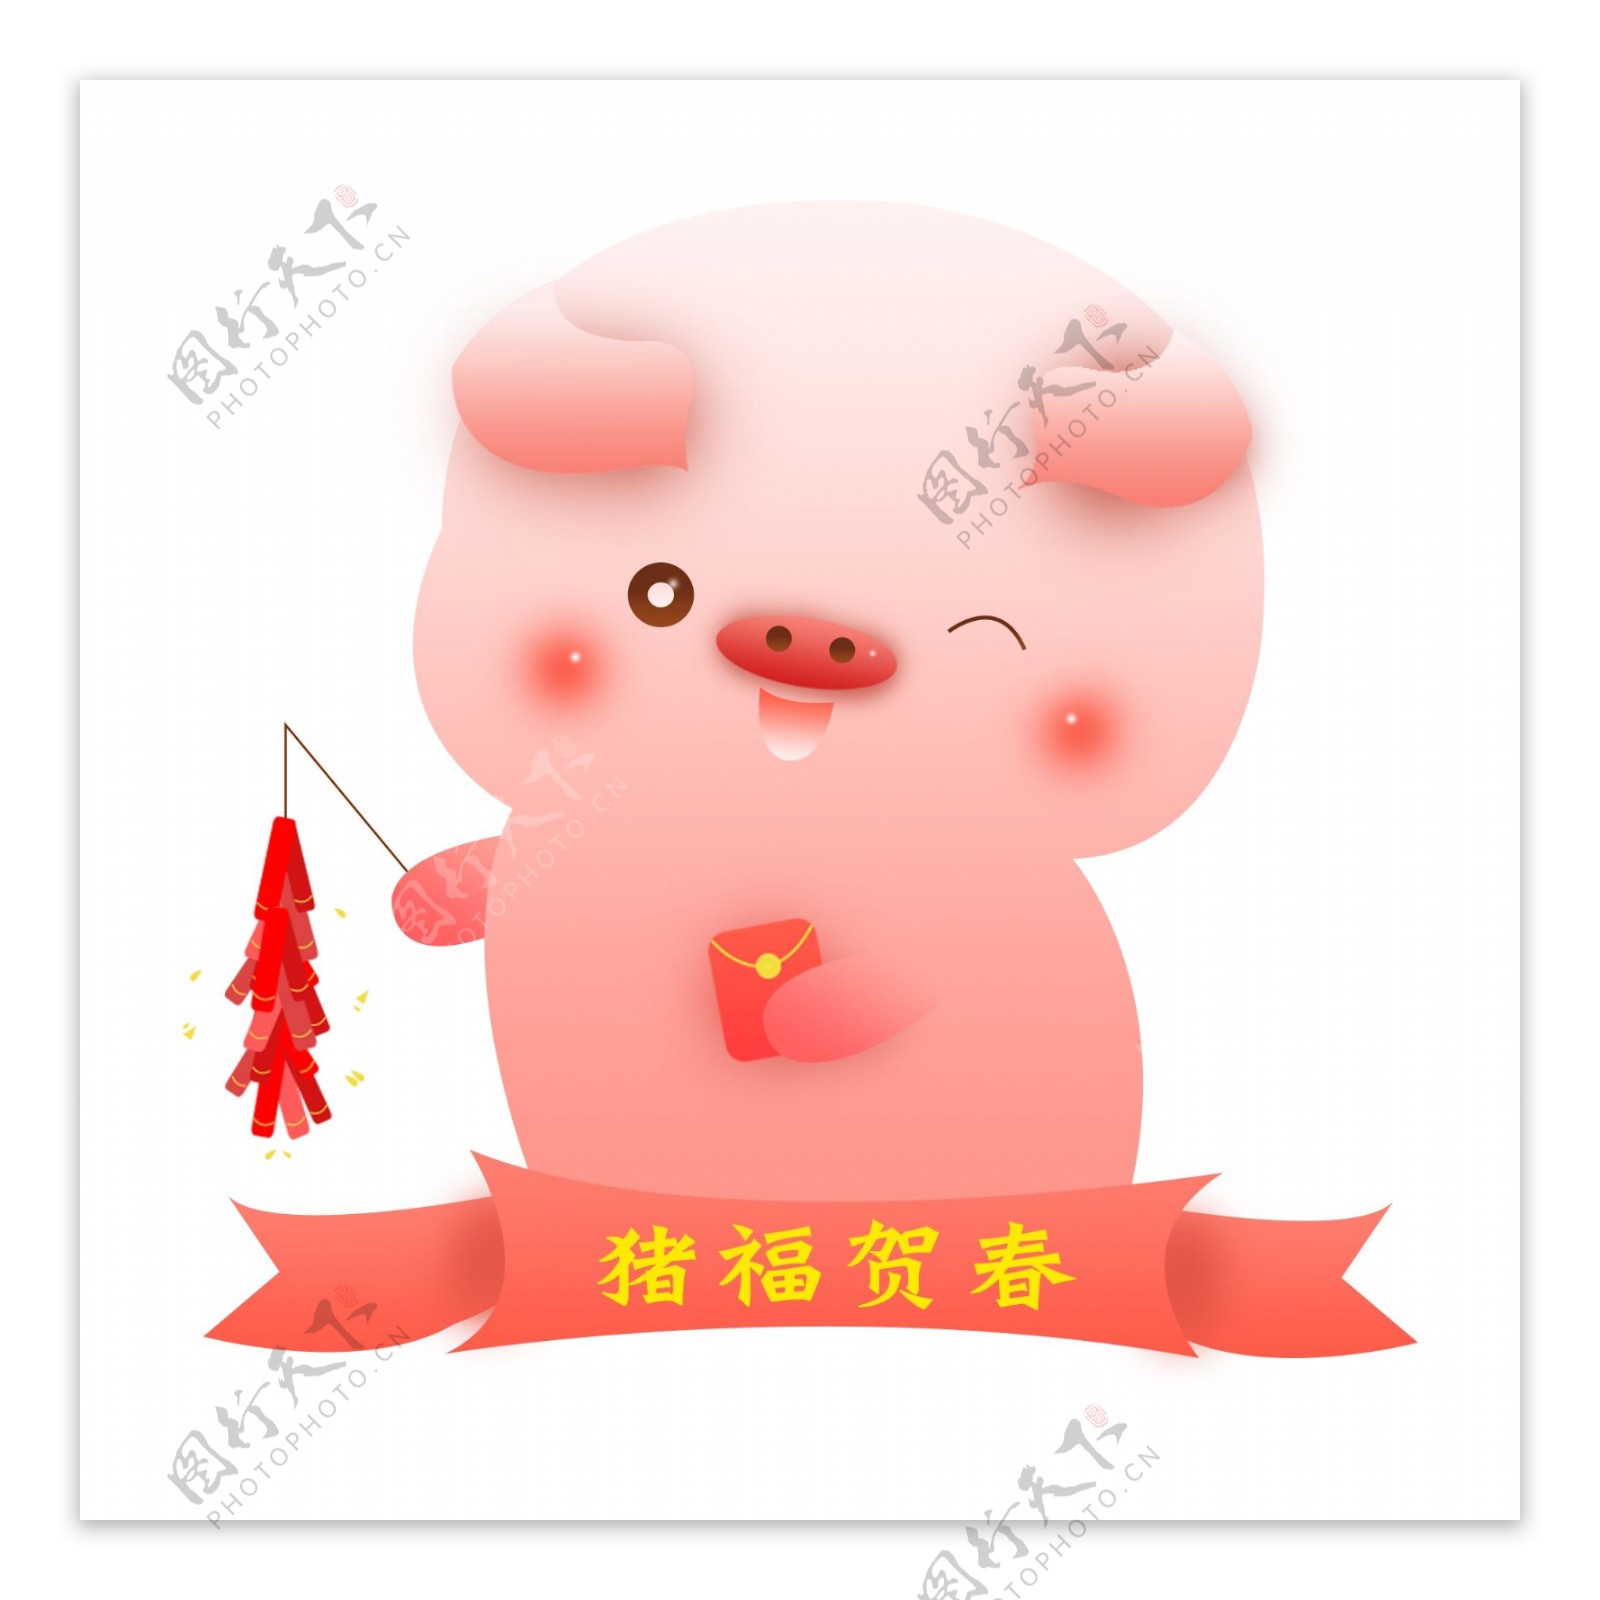 猪福新春猪年卡通形象可商用元素